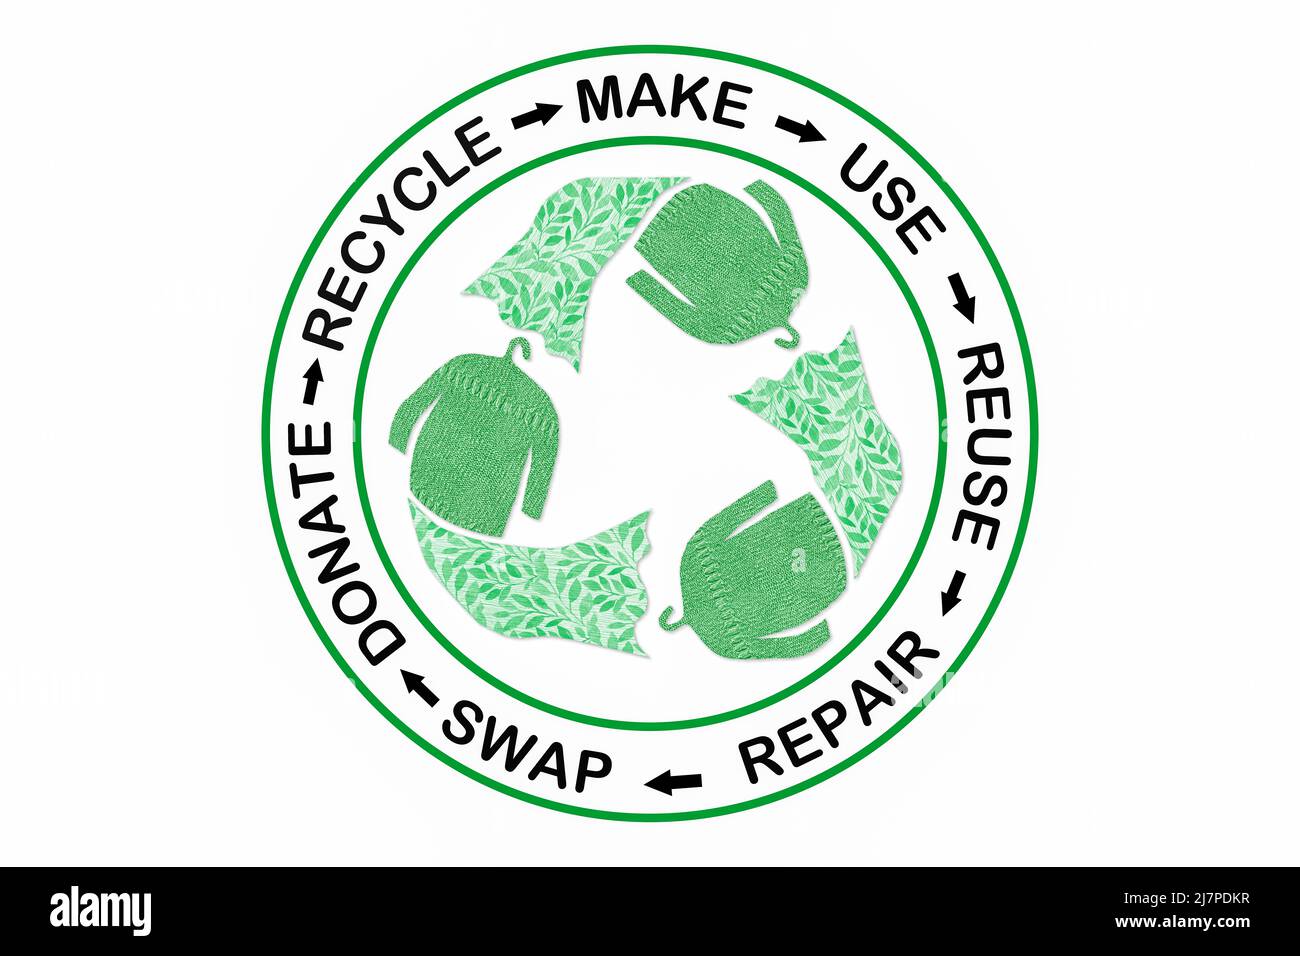 Kreisförmige Mode, machen, tragen, reparieren, upcycle, Tauschen, spenden, recyceln mit Öko Kleidung Recycling Icon nachhaltige Mode Konzept Stockfoto